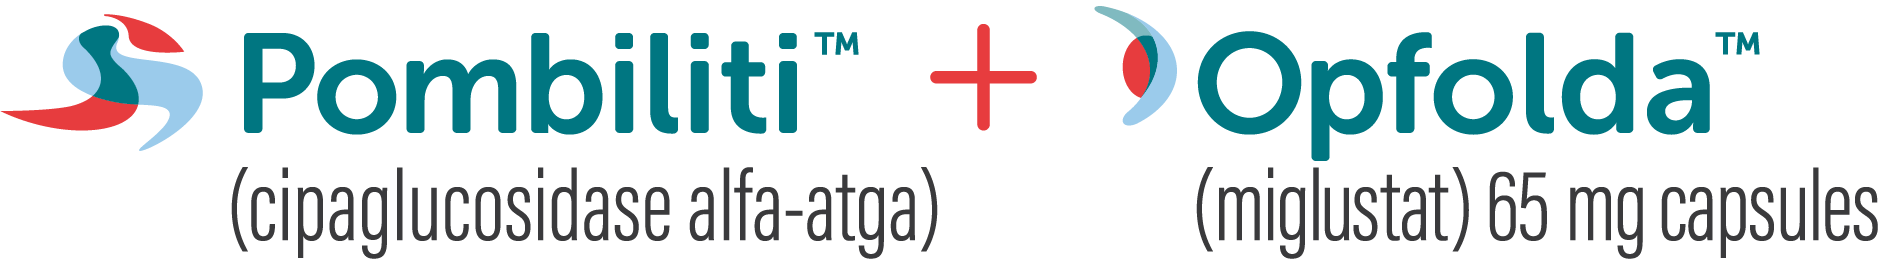 POMBILITI (cipaglucosidase alfa-atga) + OPFOLDA (miglustat)-logo